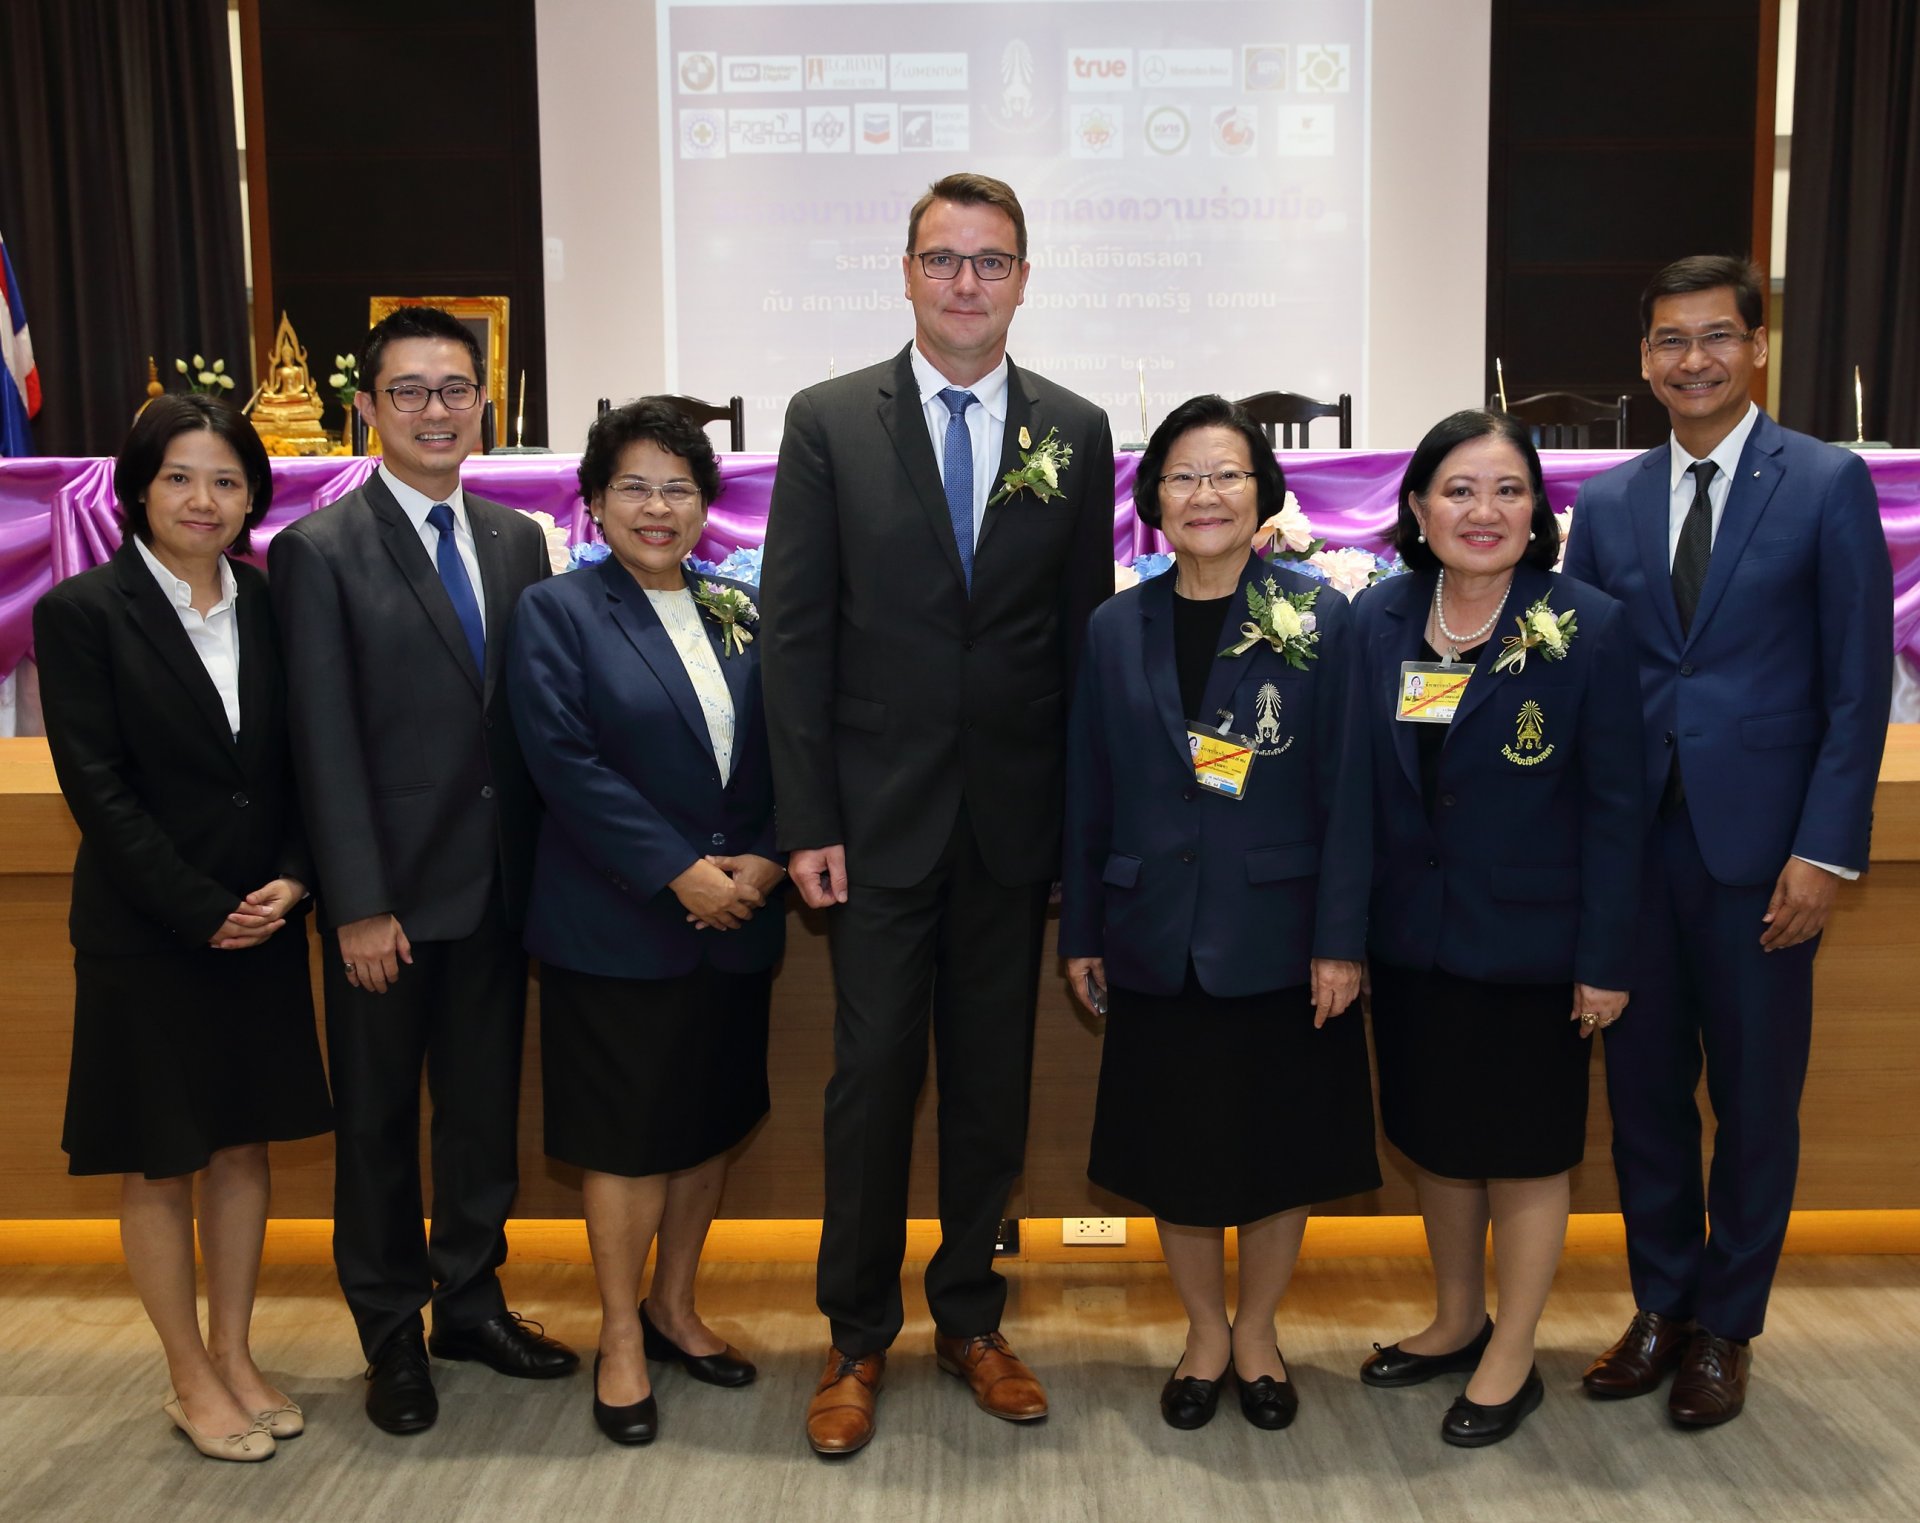 บีเอ็มดับเบิลยู กรุ๊ป แมนูแฟคเจอริ่ง ประเทศไทย และสถาบันเทคโนโลยีจิตรลดา ร่วมลงนามบันทึกข้อตกลงความร่วมมือในโครงการ BMW Dual Excellence Program